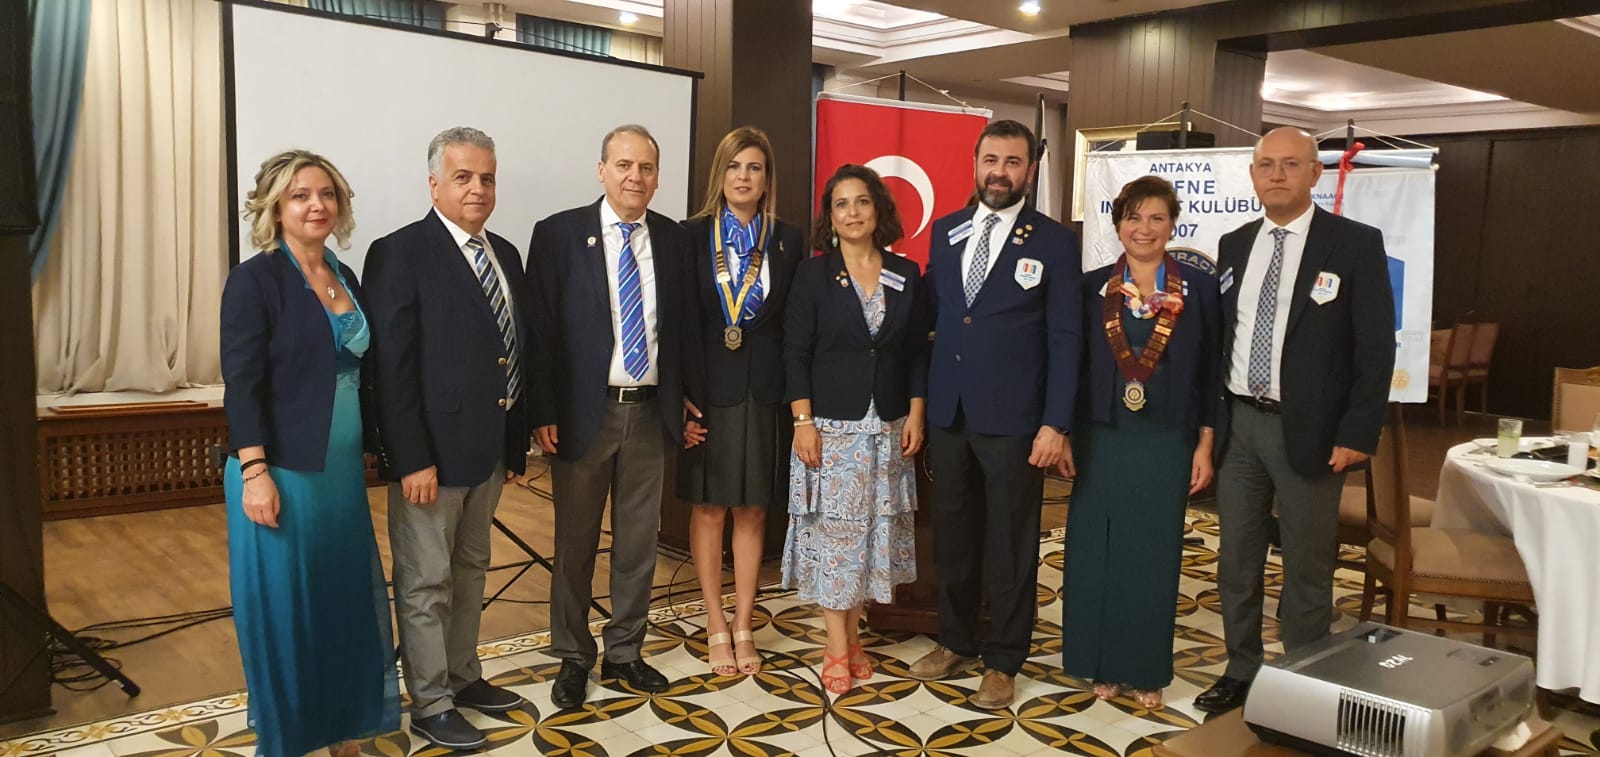 Antakya Defne Rotary Kulübü’nde Yeni Başkan Dr. Selda Bağdadioğlu Yumuşak